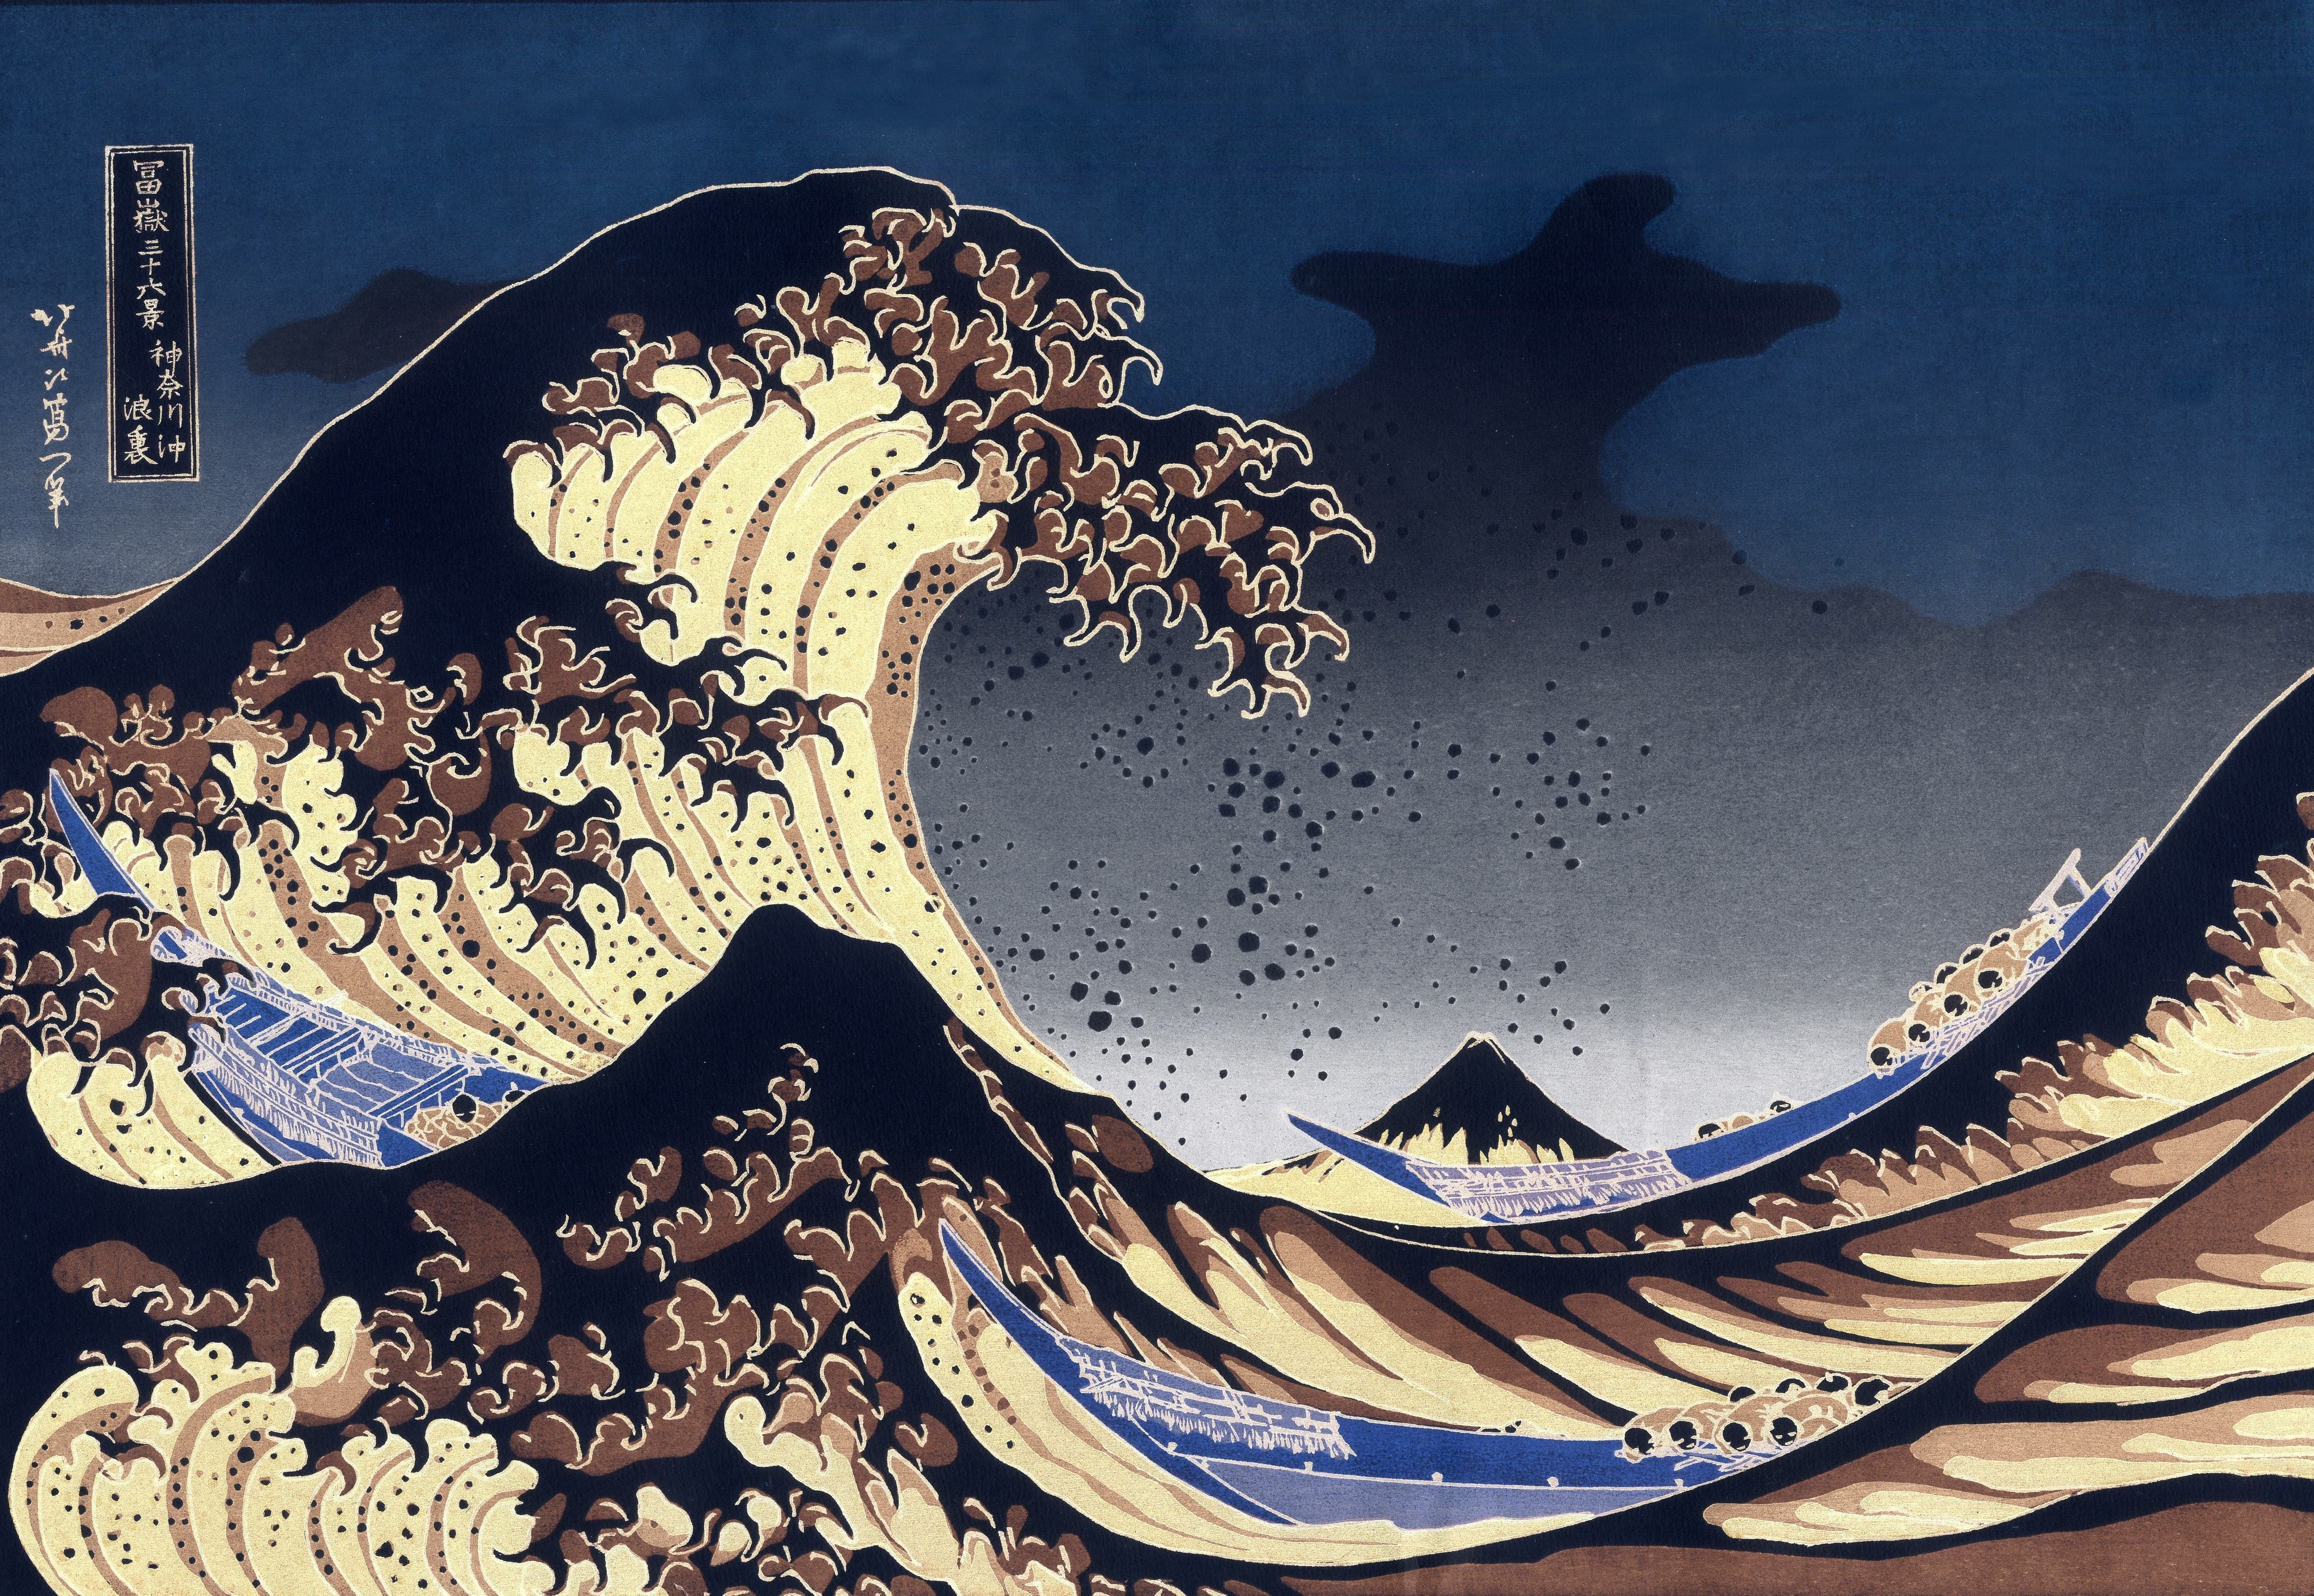 Japanese Wave Wallpaper By Bobbi Beck | notonthehighstreet.com